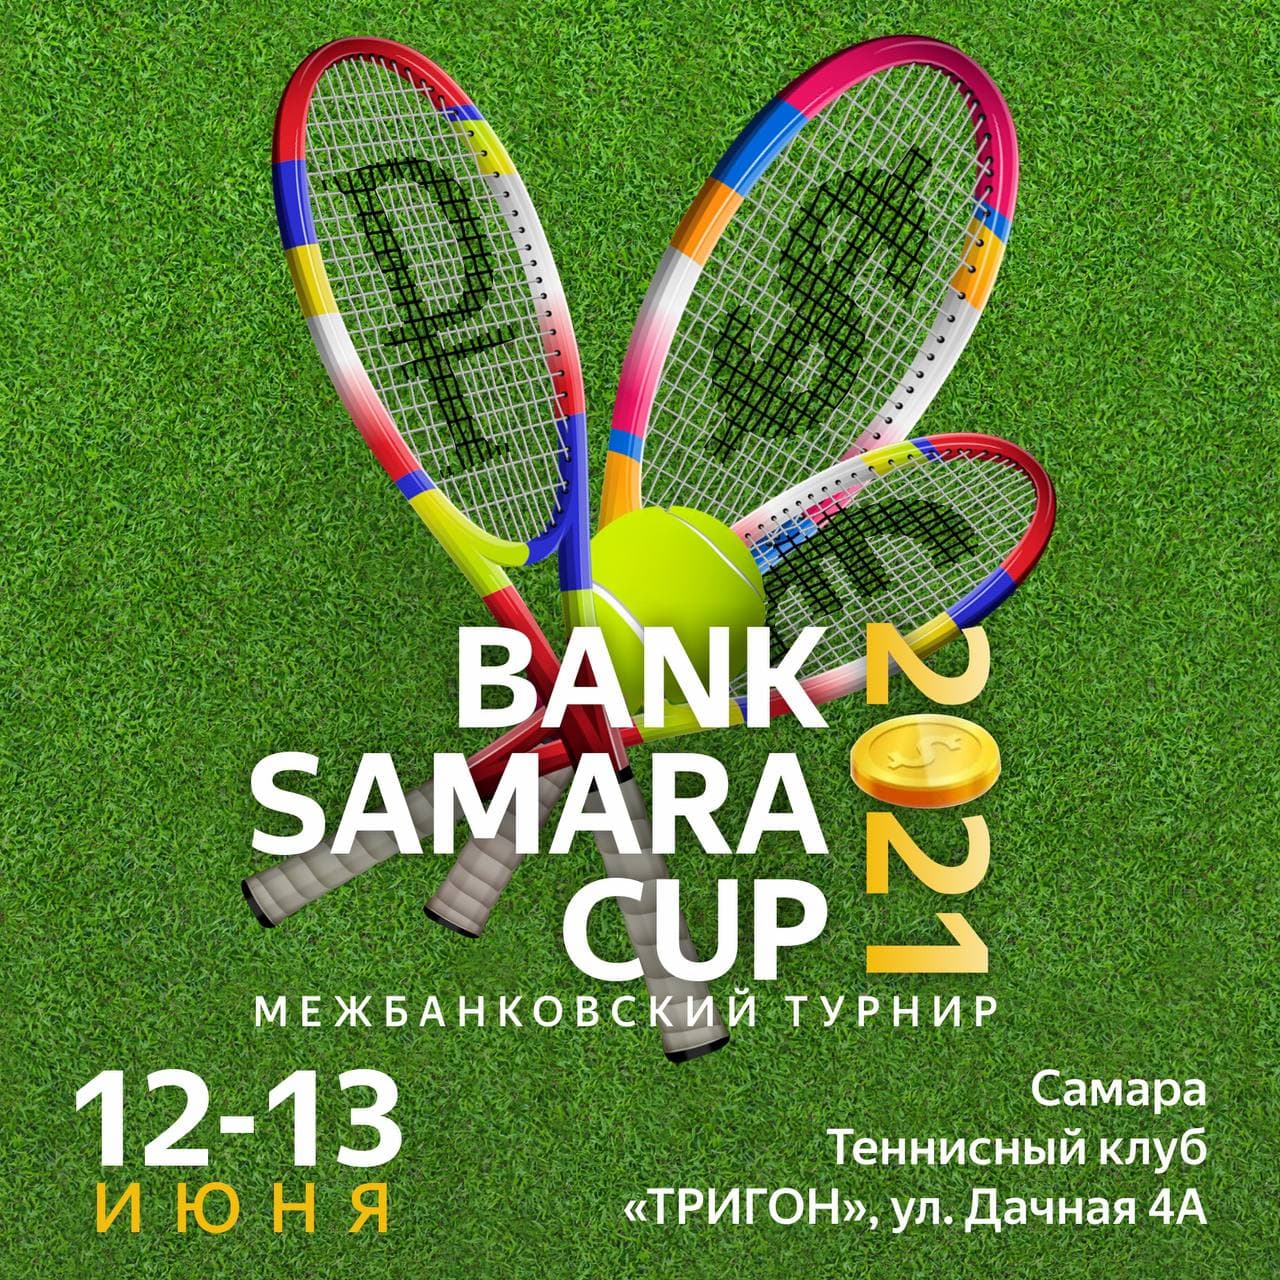 BANK SAMARA CUP 2021